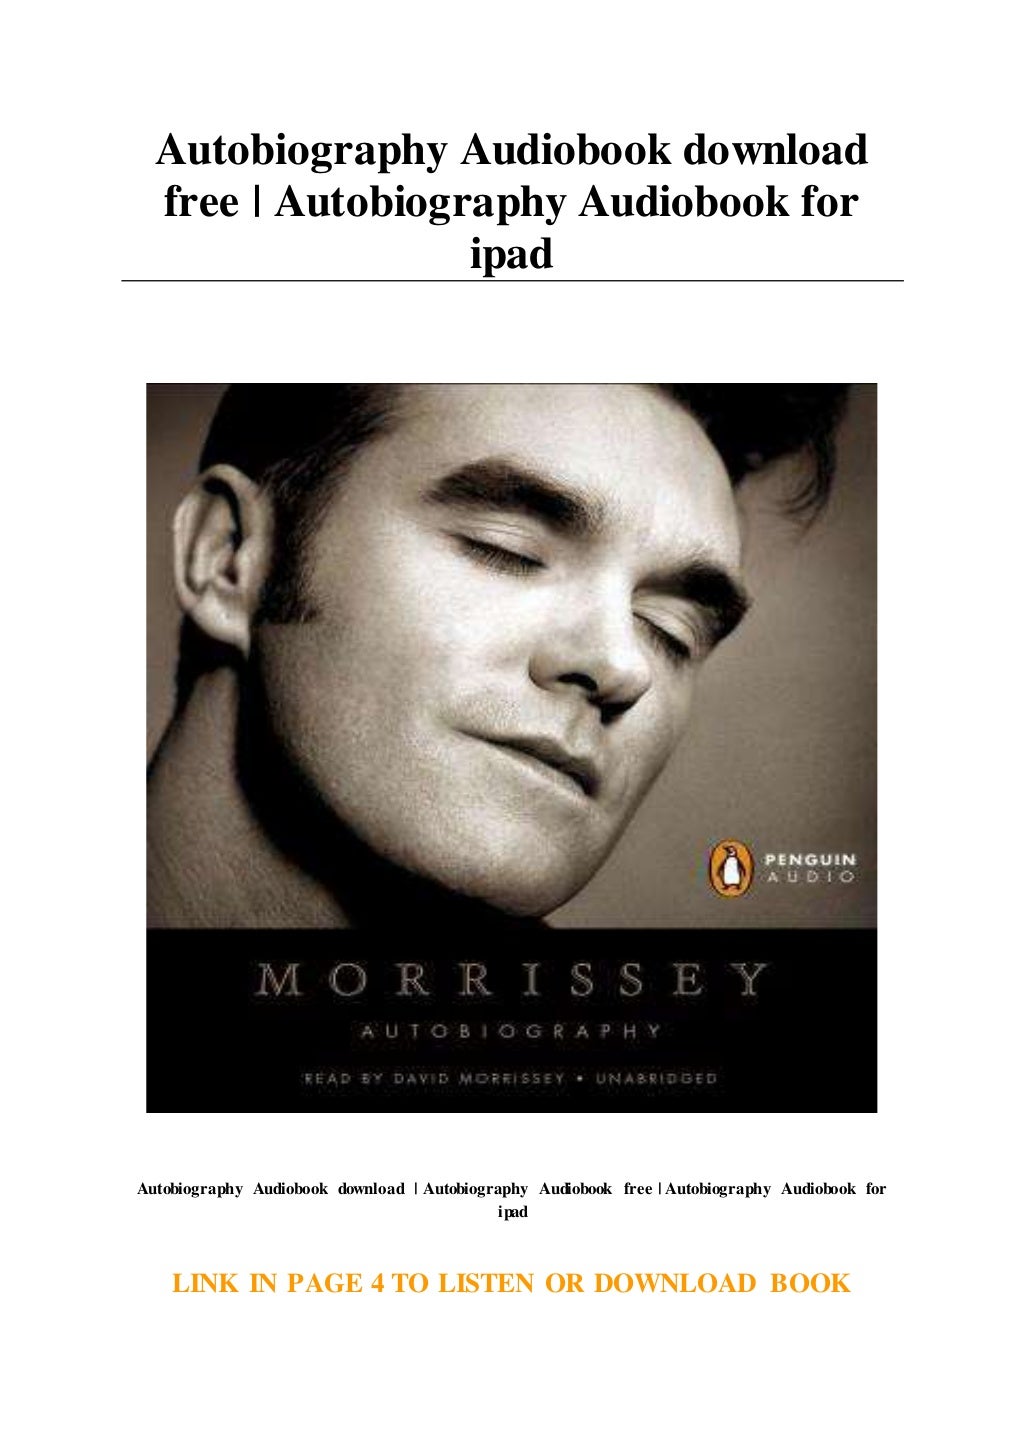 best autobiography audiobook